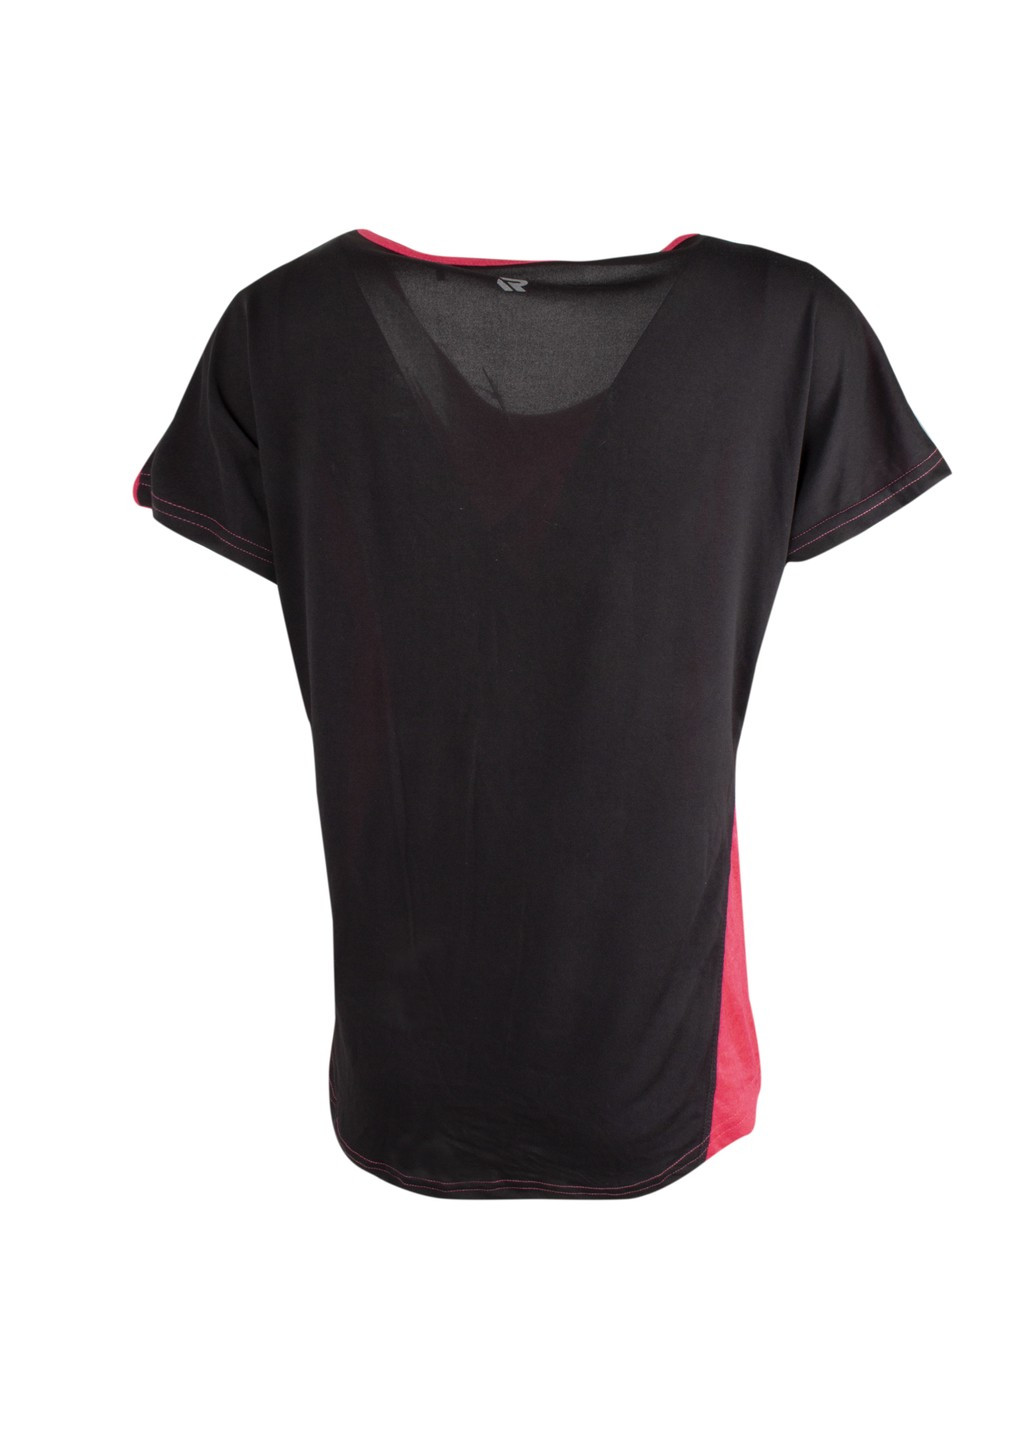 Малиновая женская футболка Redmax